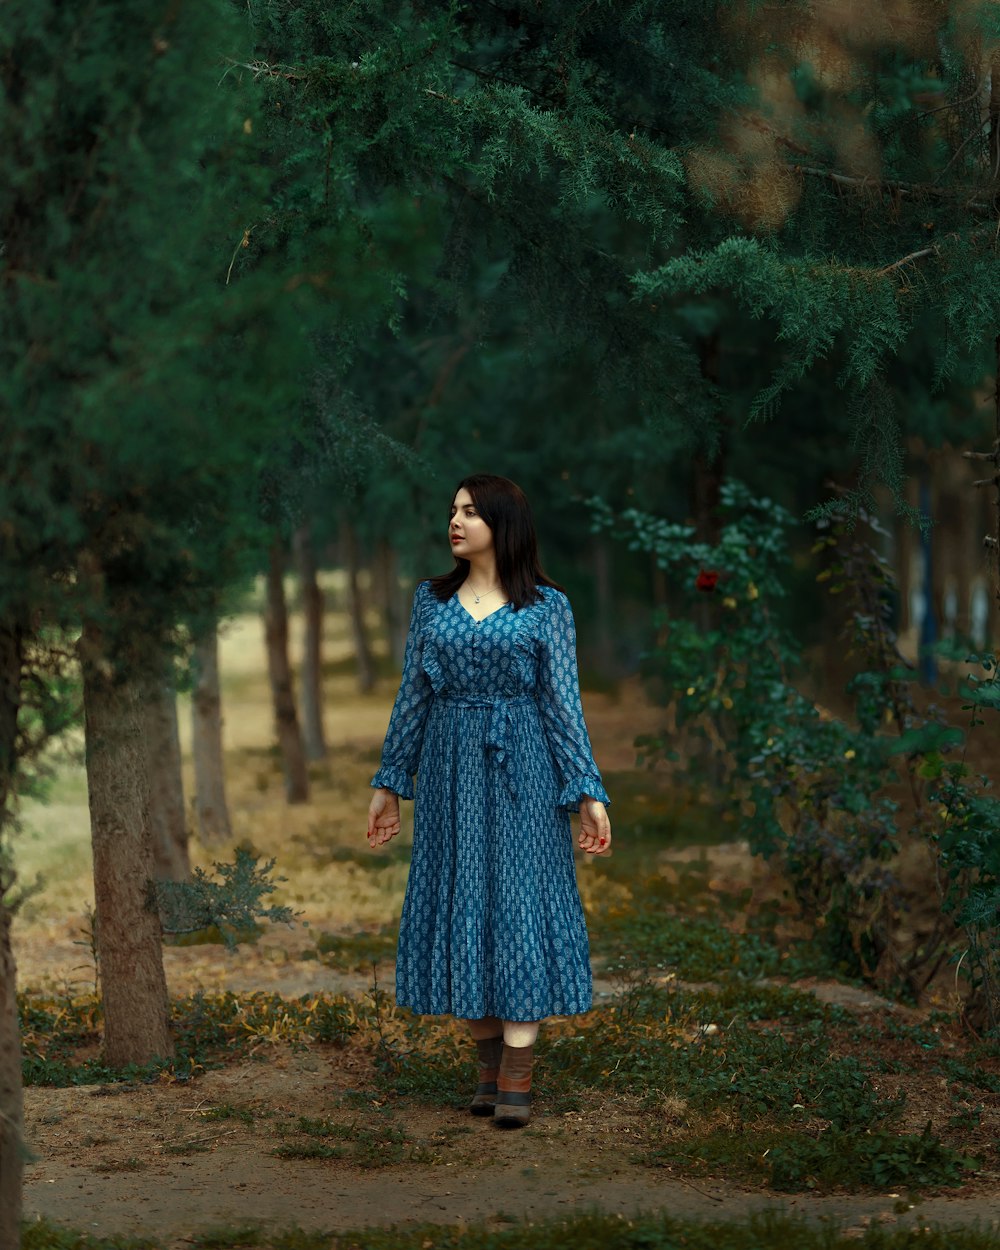 Une femme en robe bleue marchant dans une forêt